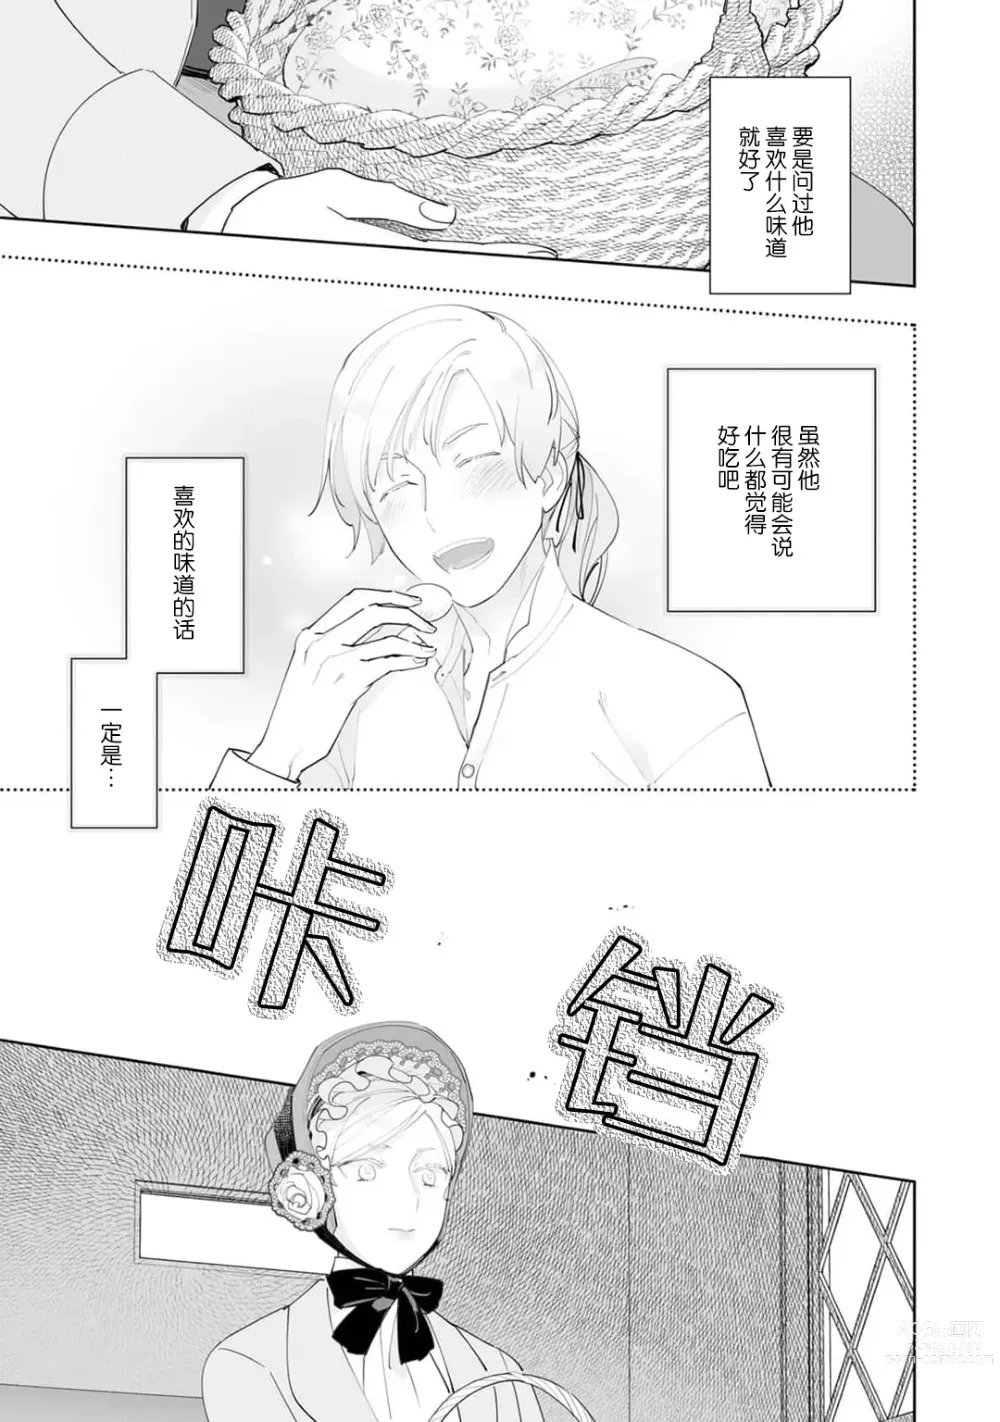 Page 144 of manga 被解除婚约的恶役千金，被帅哥资产家求婚了。 1-4